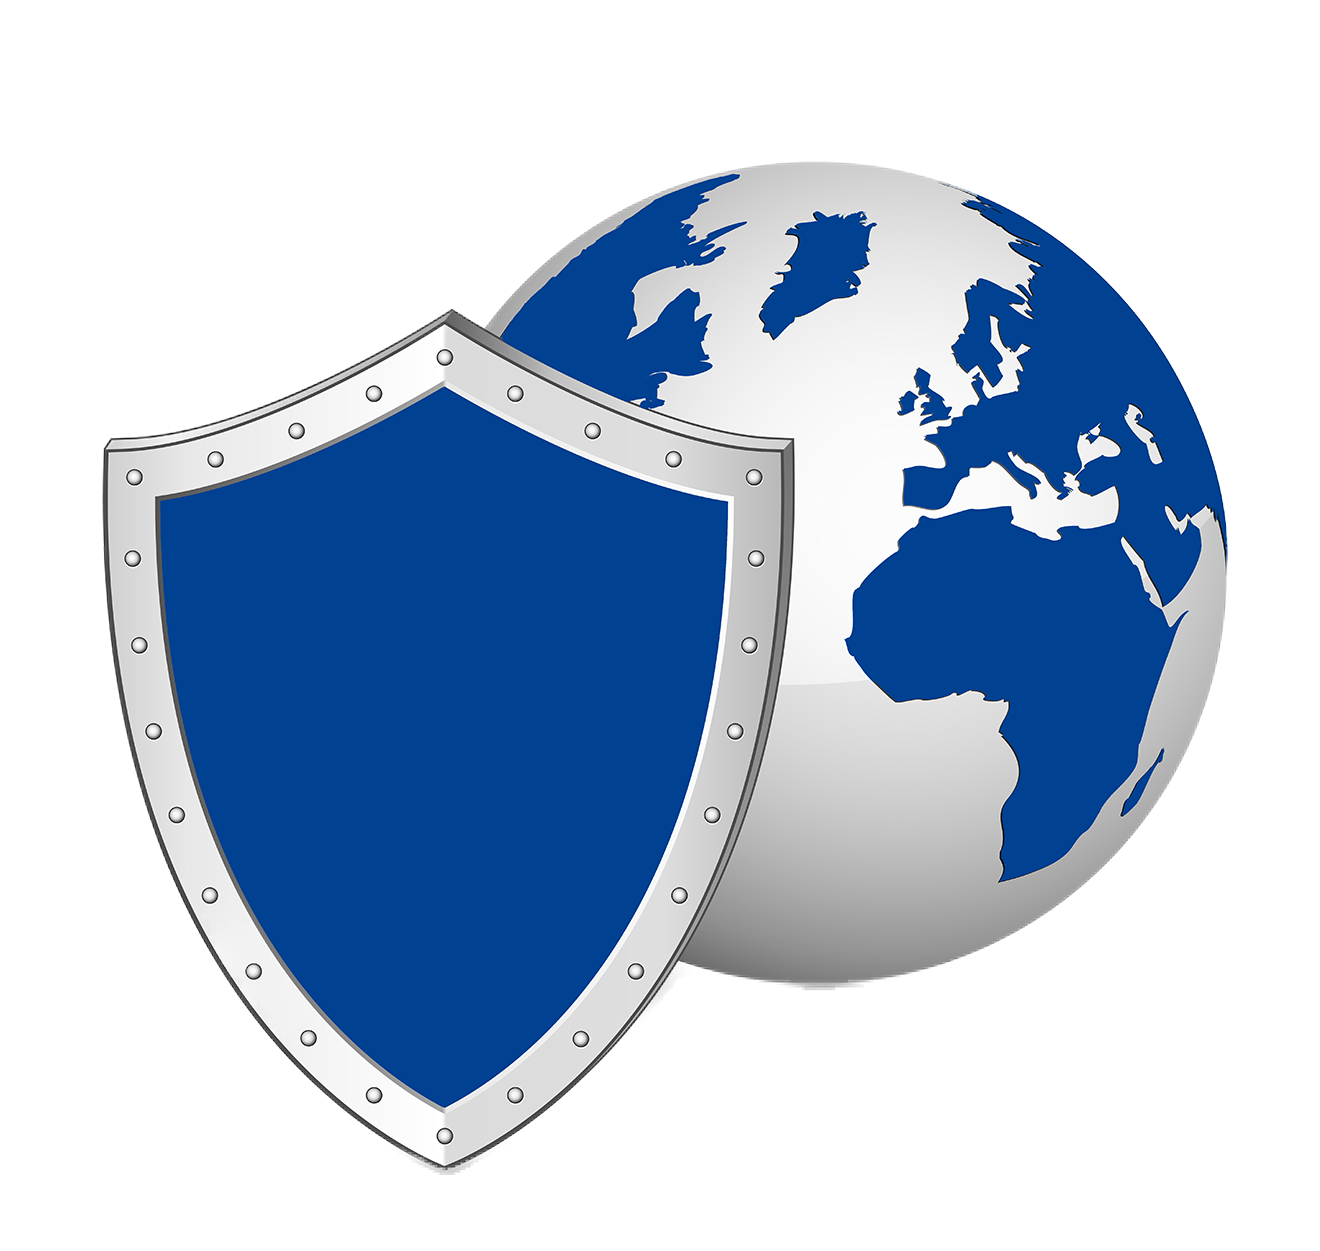 azure arc secure environment